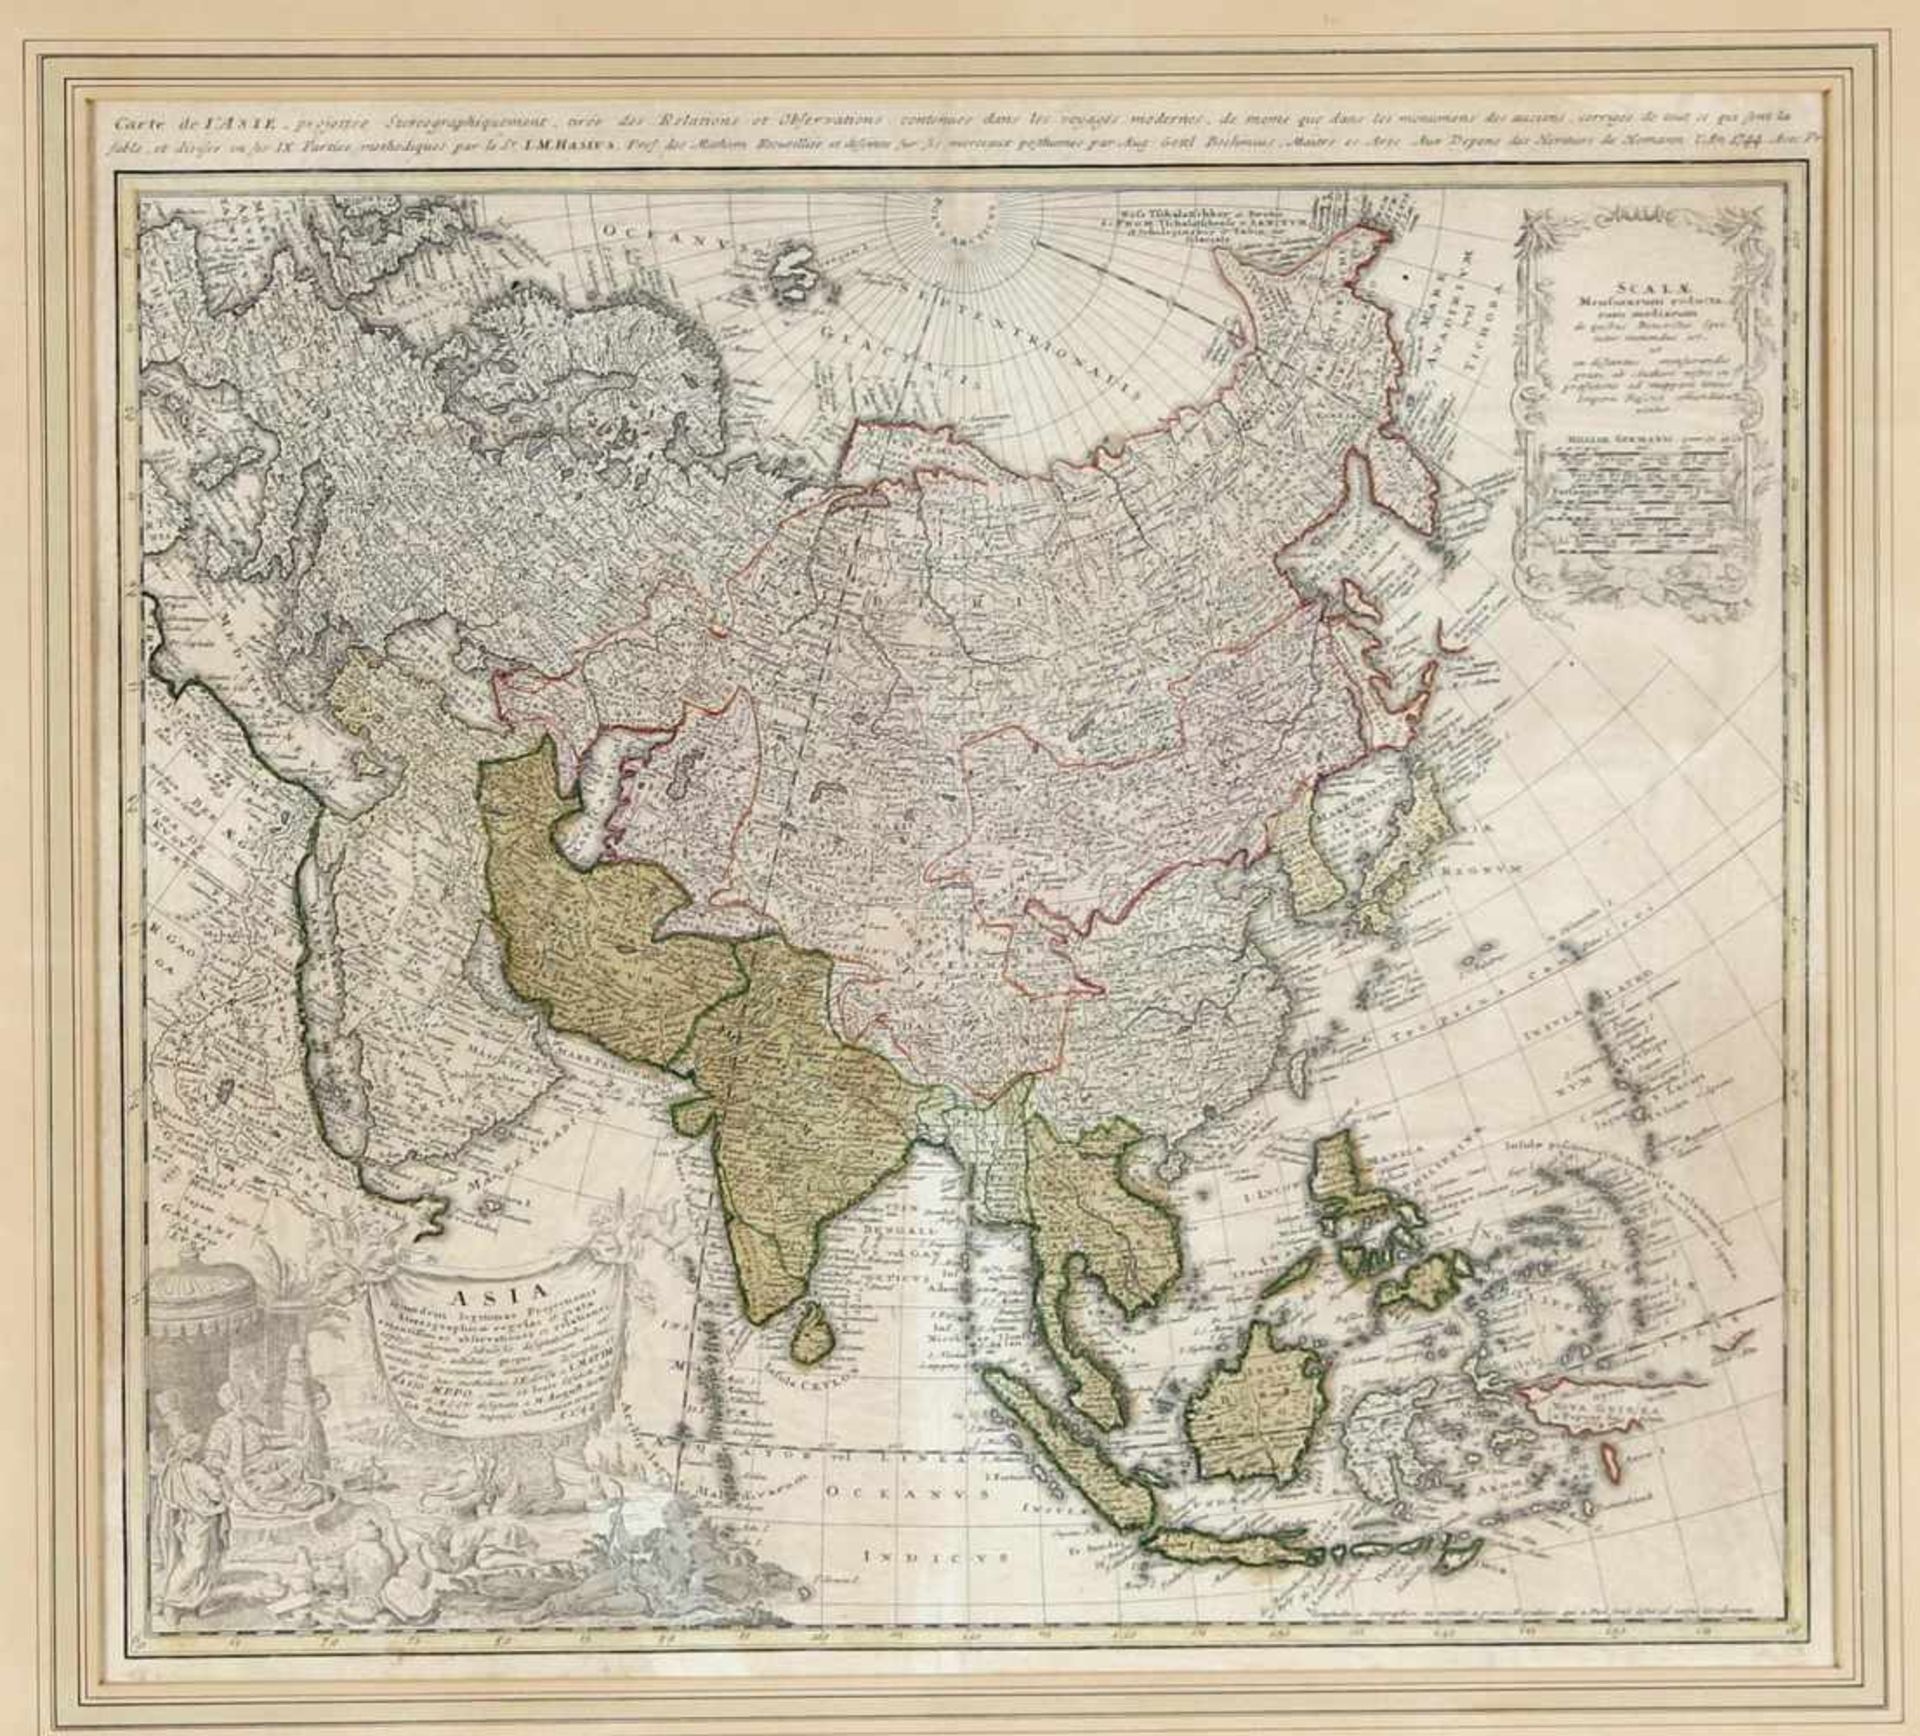 Kolorierte Kupferstichkarte - Asia, Johann Matthias Hasius, 1744Mitarbeiter von Homanns Erben ab